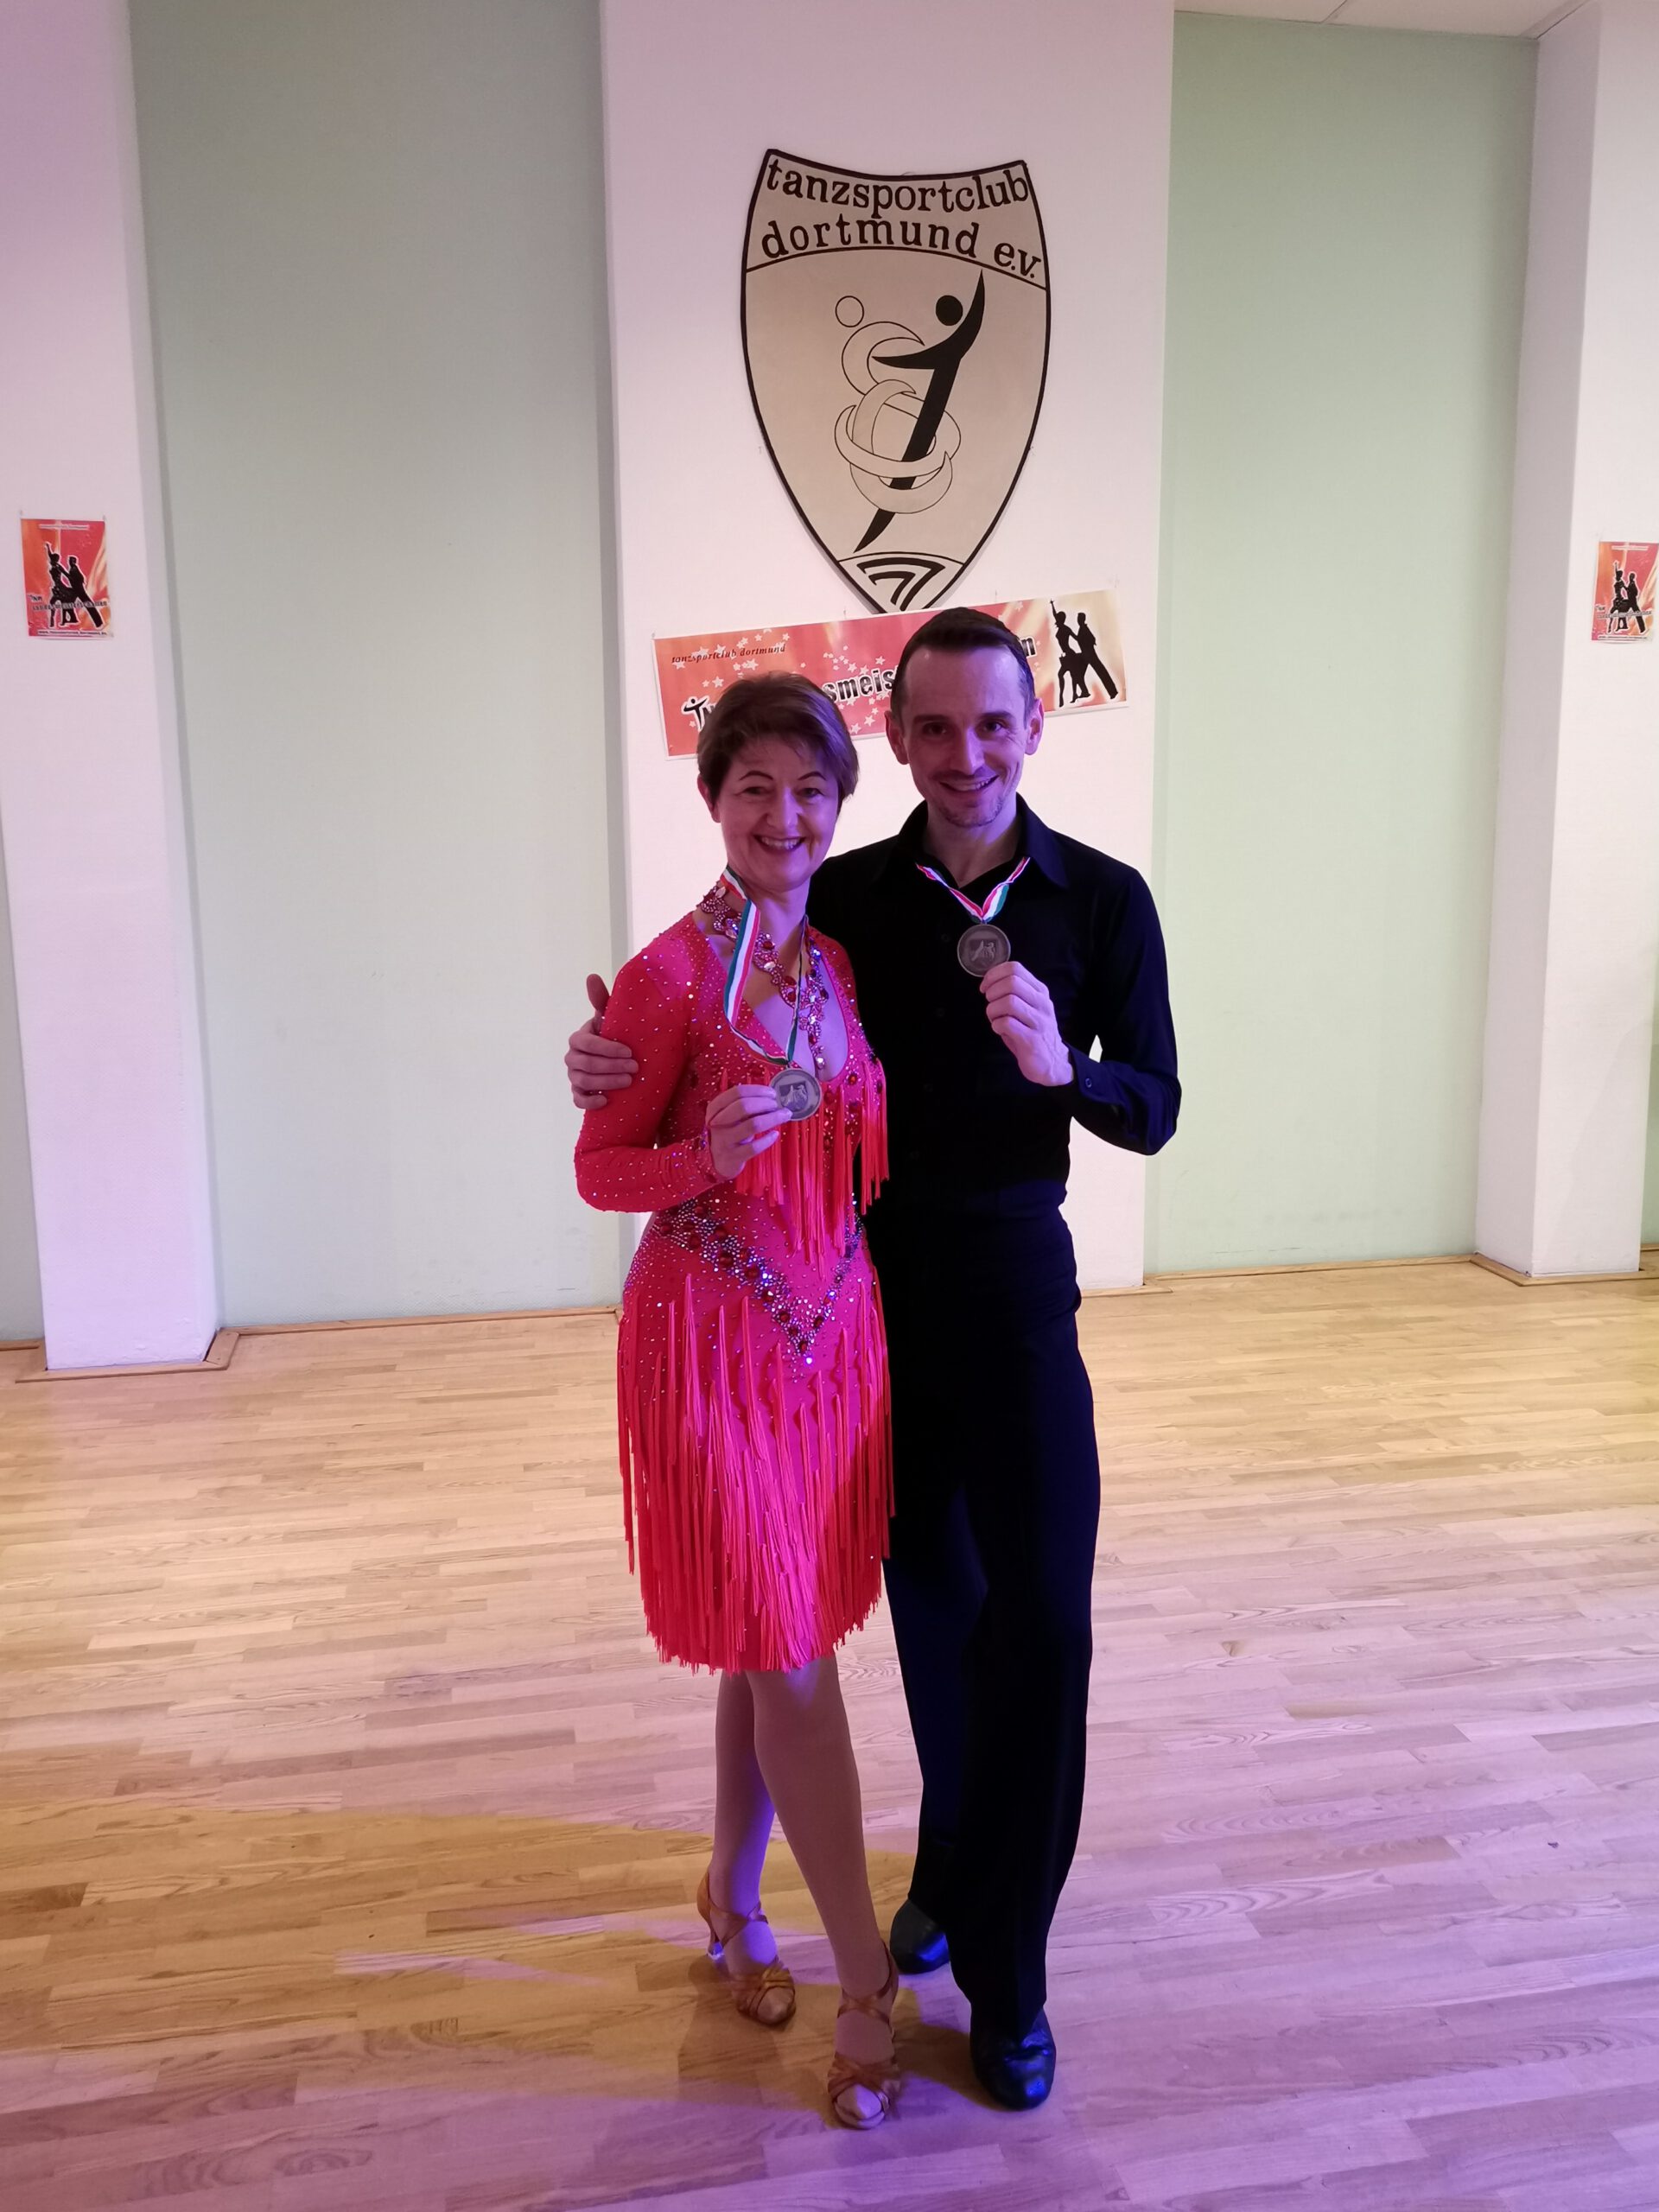 Herzlichen Glückwunsch! Vize- Landesmeistertitel für Pascal Cziborra und Sigrid Münnichow